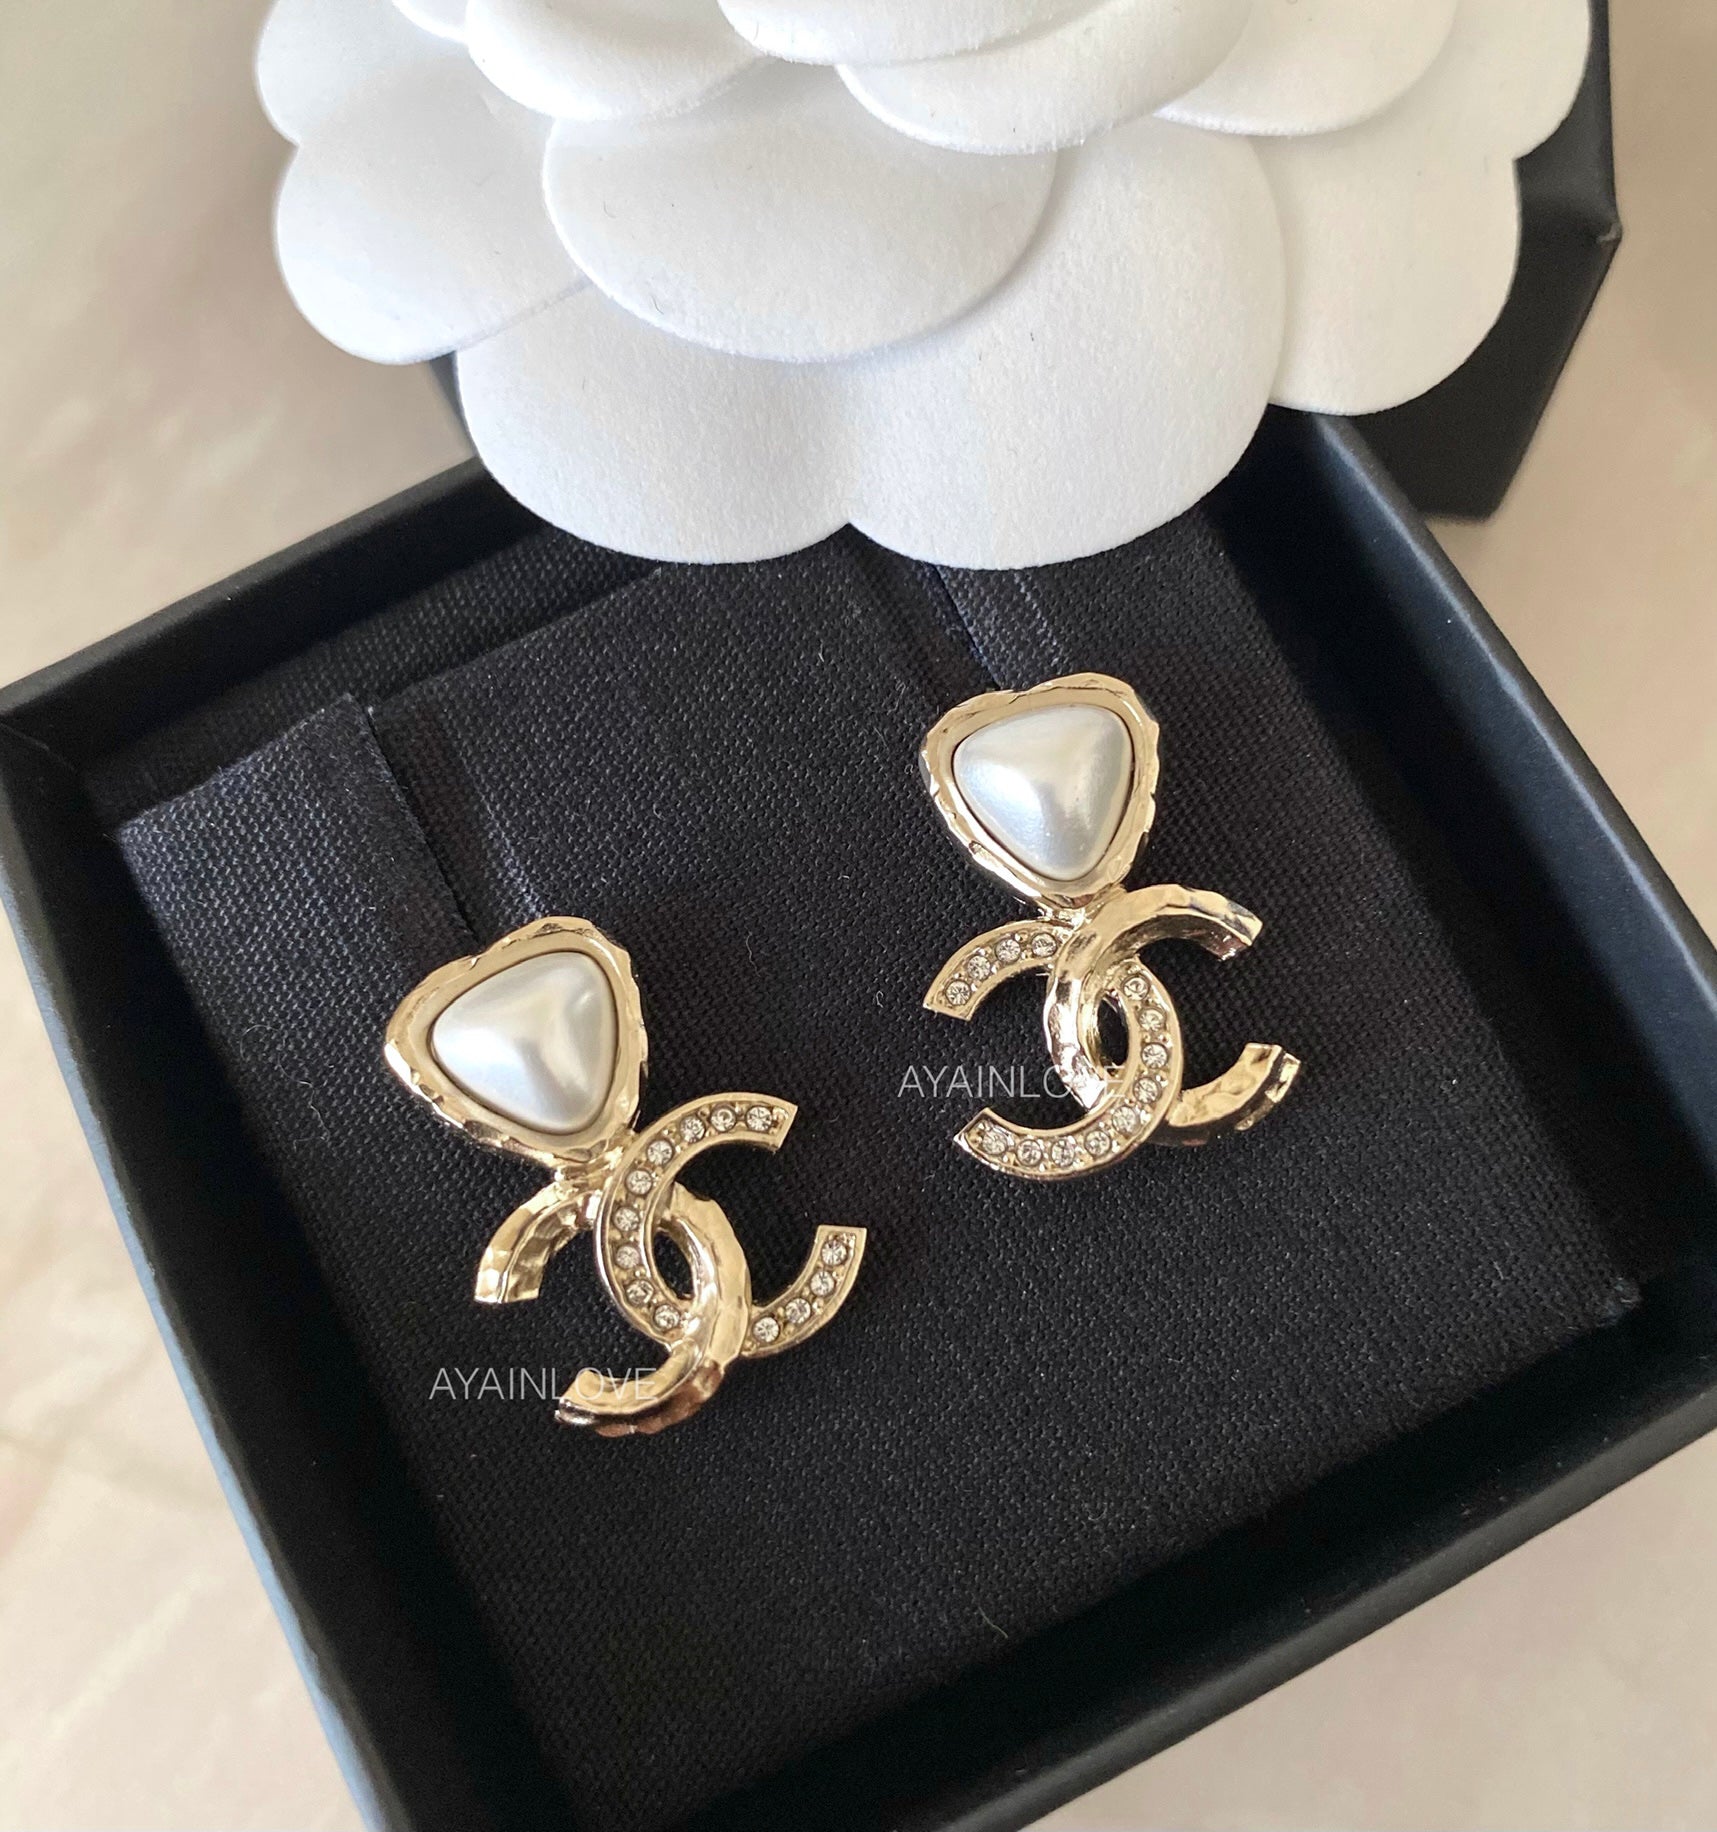 Chanel Pearl CC Drop Earrings Light Gold